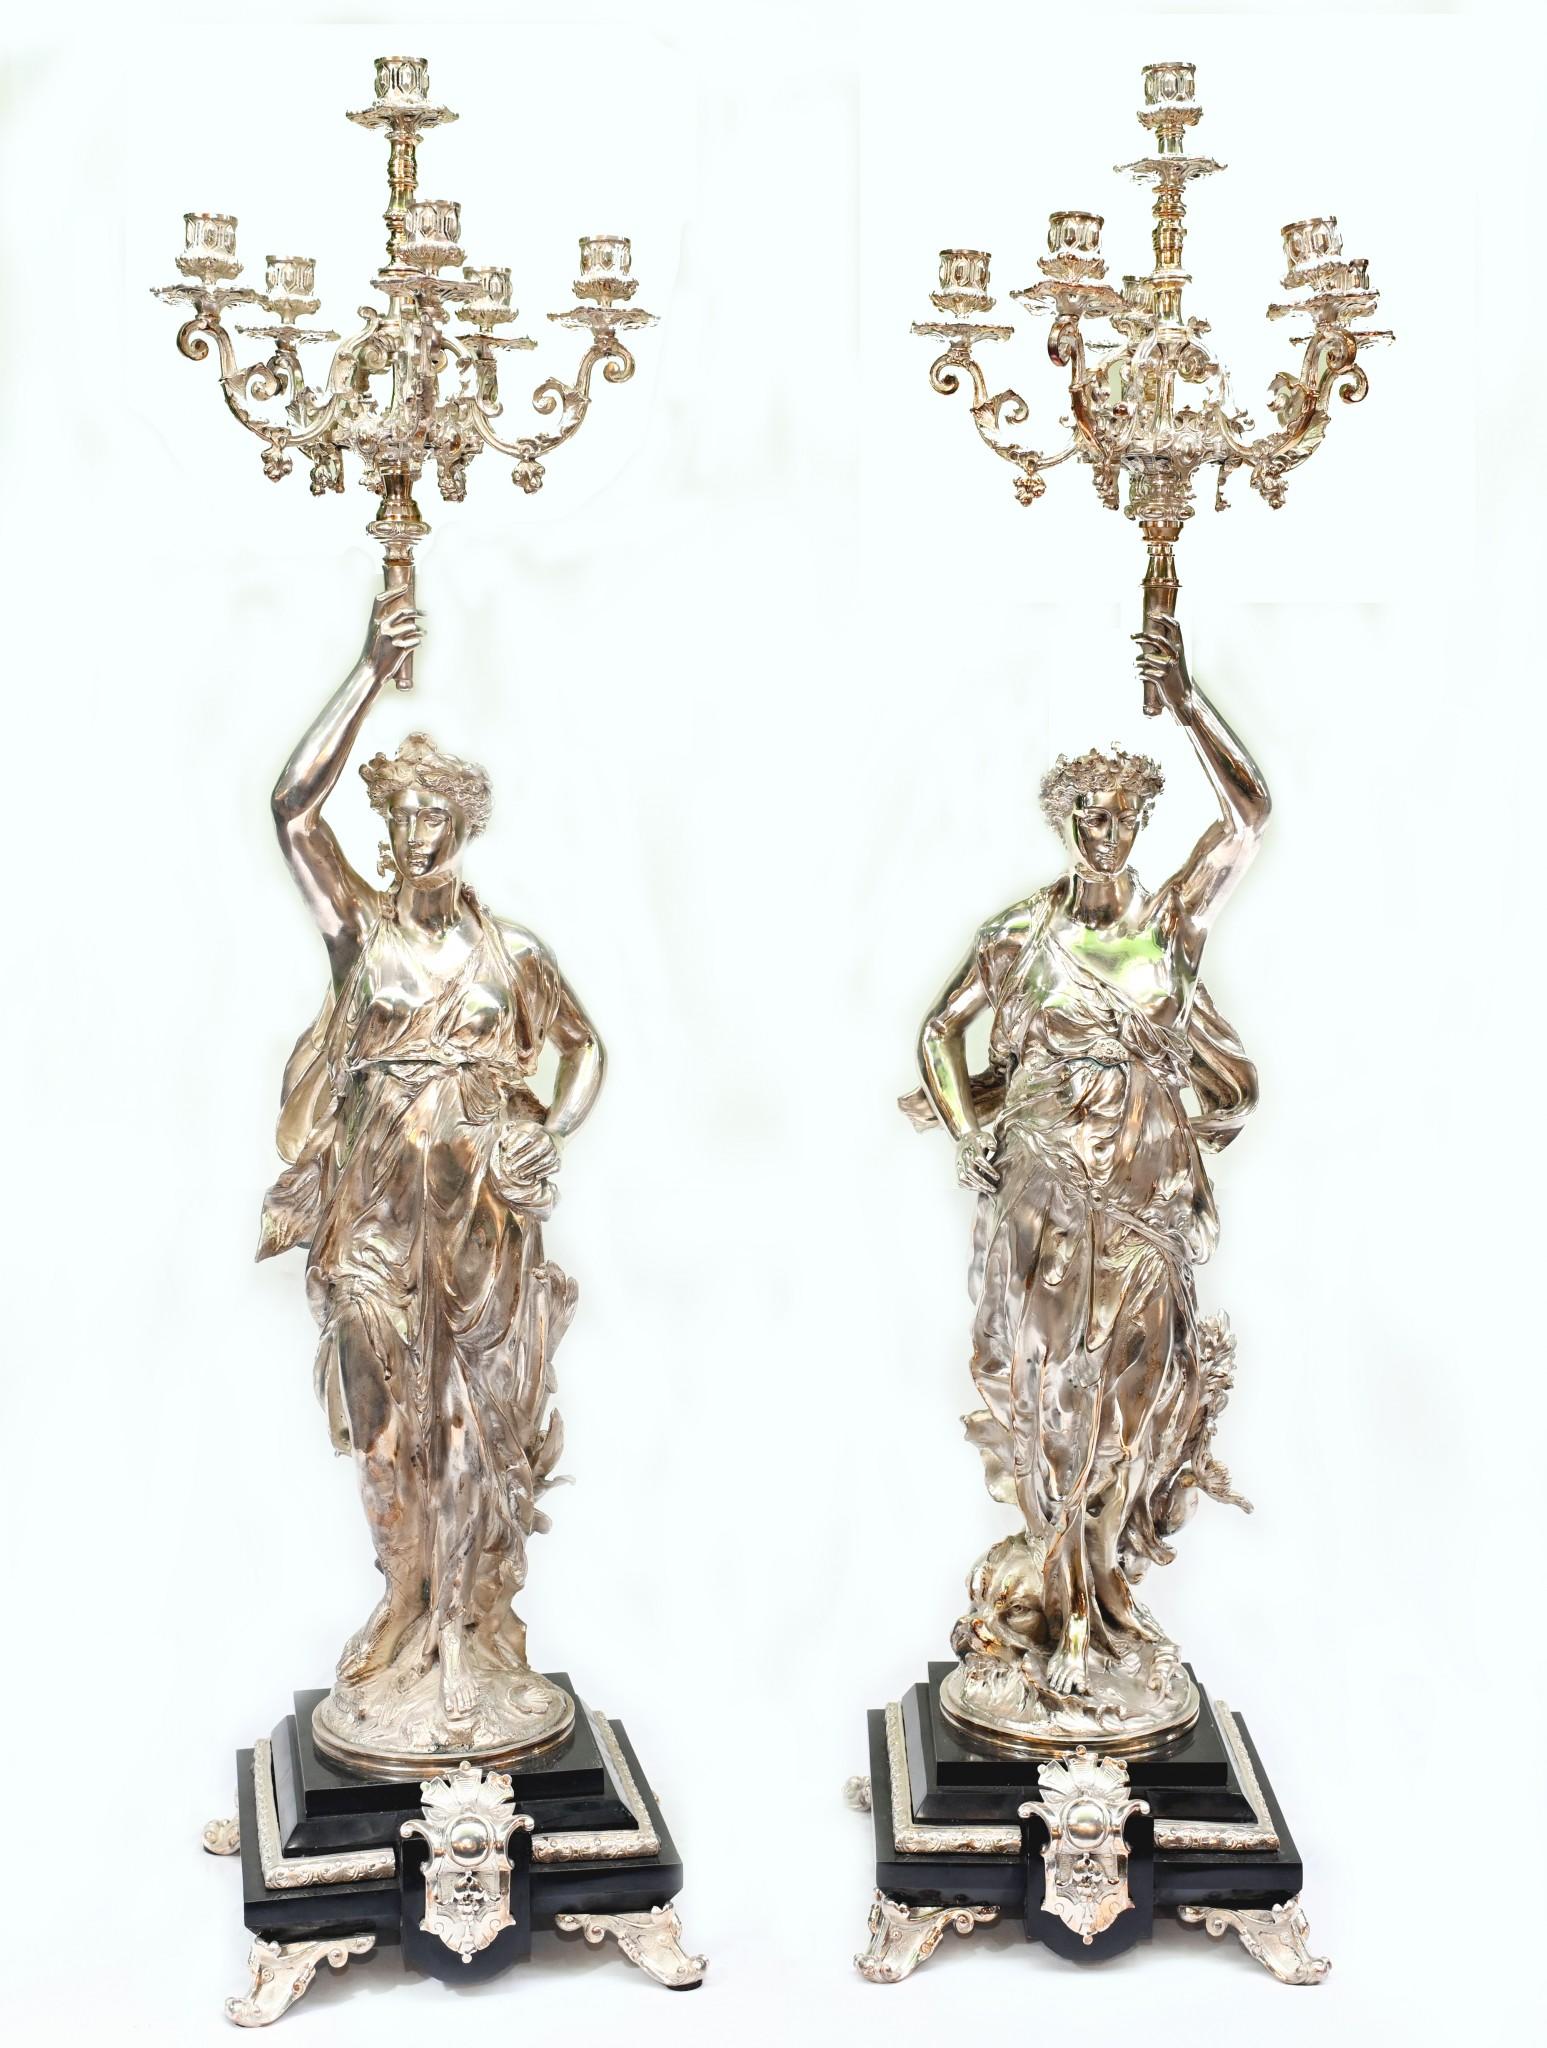 Wunderschönes Paar französischer Silberkandelaber von Gregoire
Ich hoffe, die Fotos werden diesem atemberaubenden Paar einigermaßen gerecht - in natura sieht es besser aus!
Diese stehen in bei 40 Zoll hoch, so eine beeindruckende Größe
Perfekt links